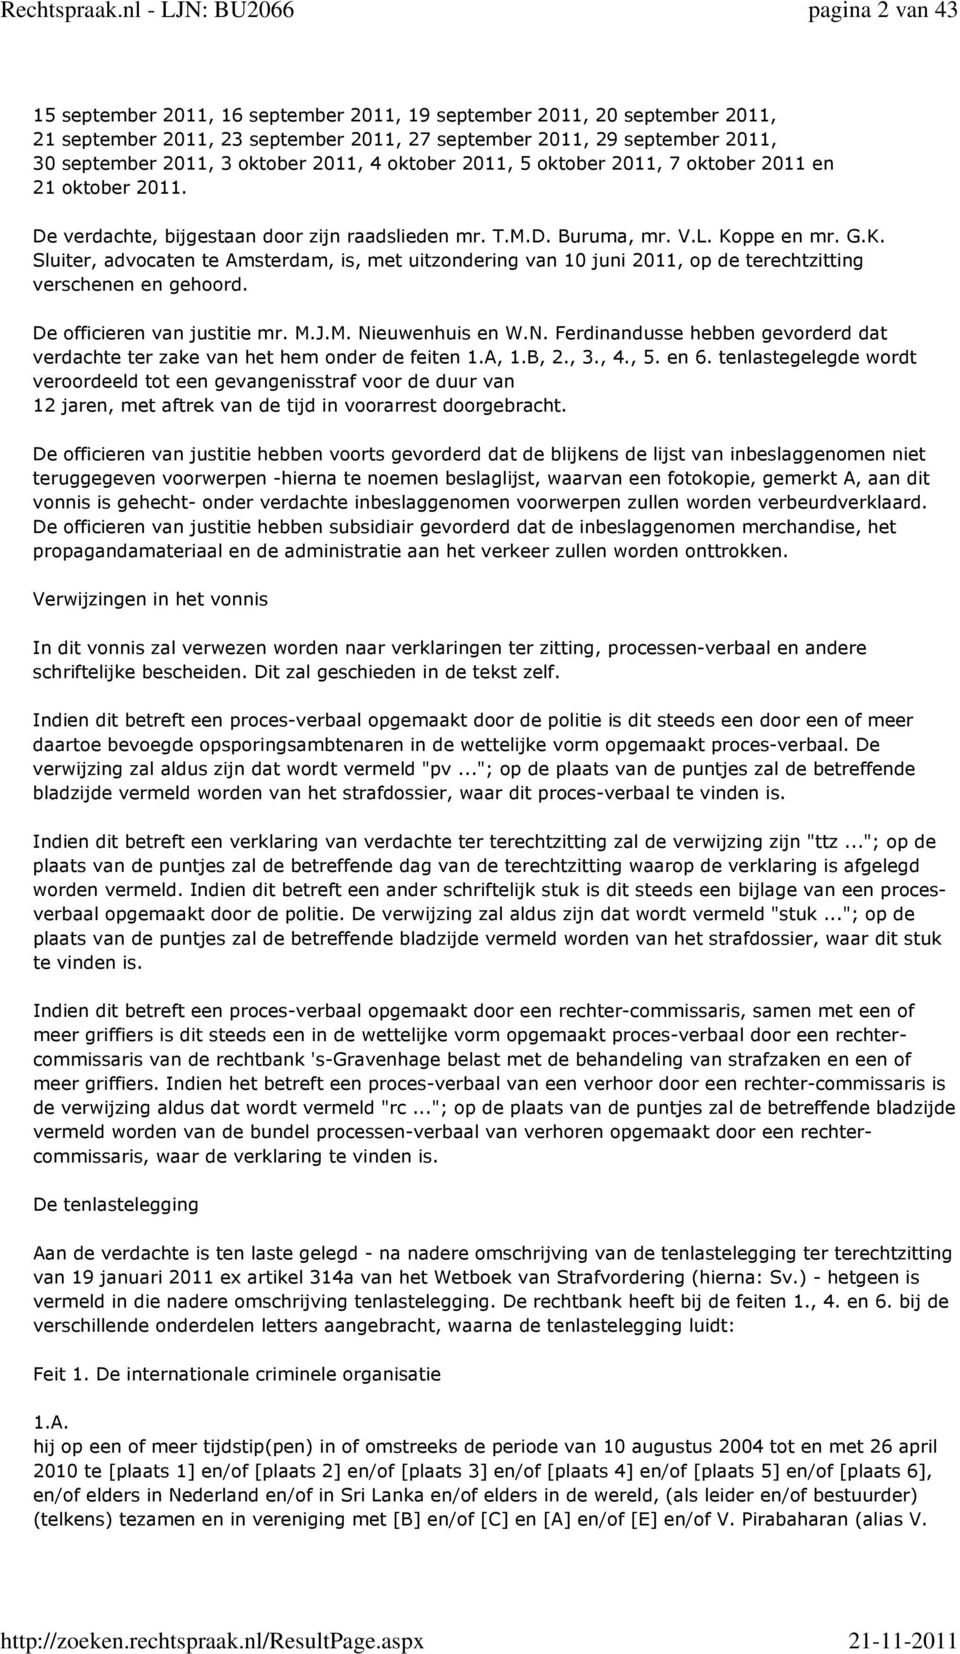 ppe en mr. G.K. Sluiter, advocaten te Amsterdam, is, met uitzondering van 10 juni 2011, op de terechtzitting verschenen en gehoord. De officieren van justitie mr. M.J.M. Ni